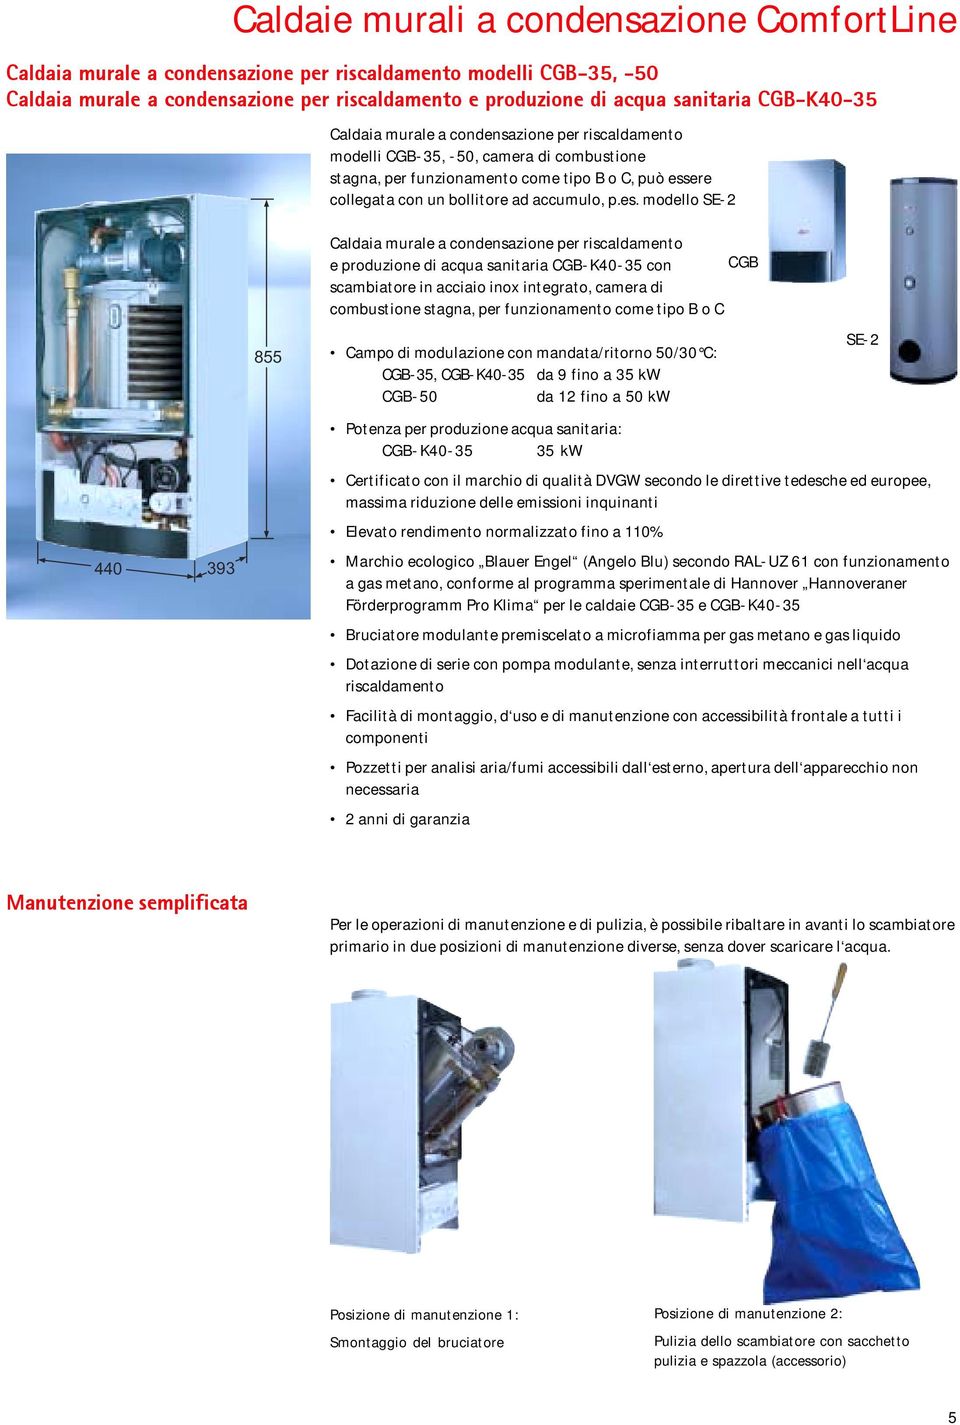 es. modello SE-2 440 393 855 Caldaia murale a condensazione per riscaldamento e produzione di acqua sanitaria CGB-K40-35 con scambiatore in acciaio inox integrato, camera di combustione stagna, per